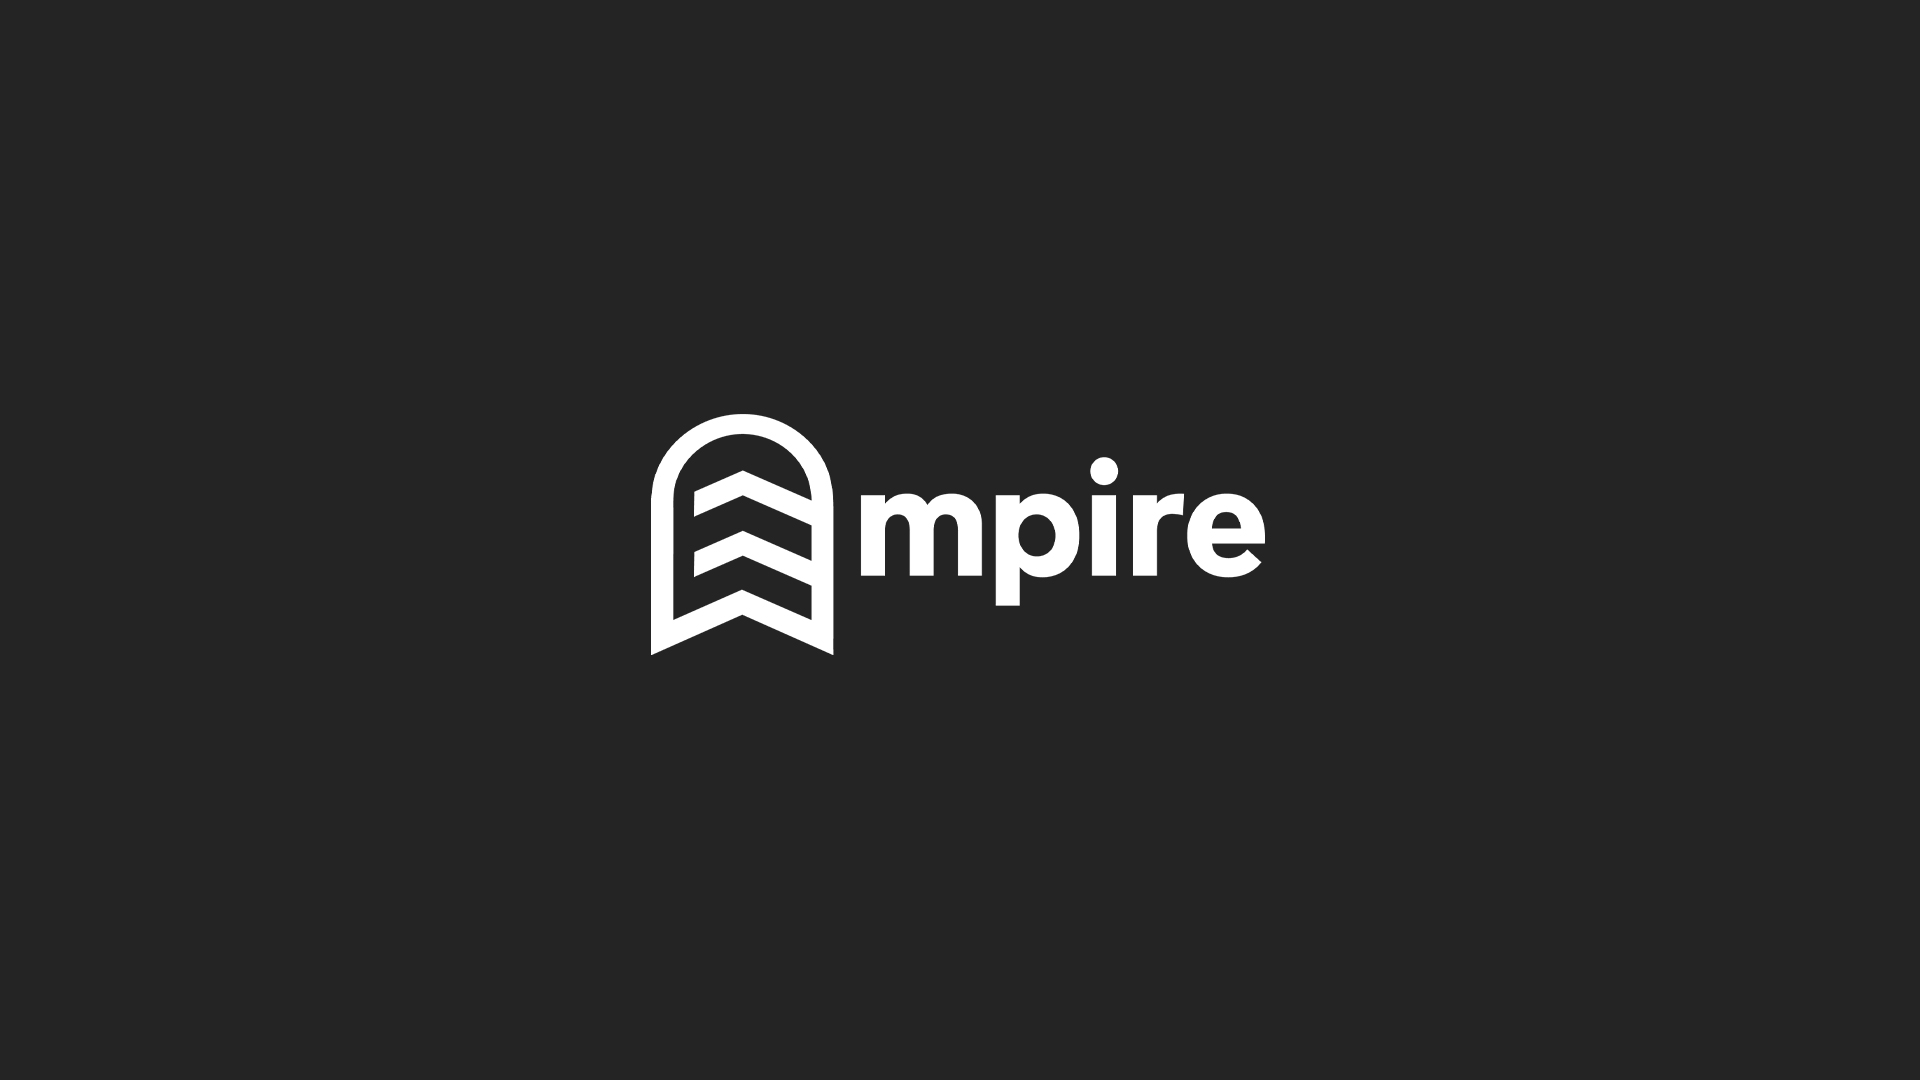 Empire The Logo Final